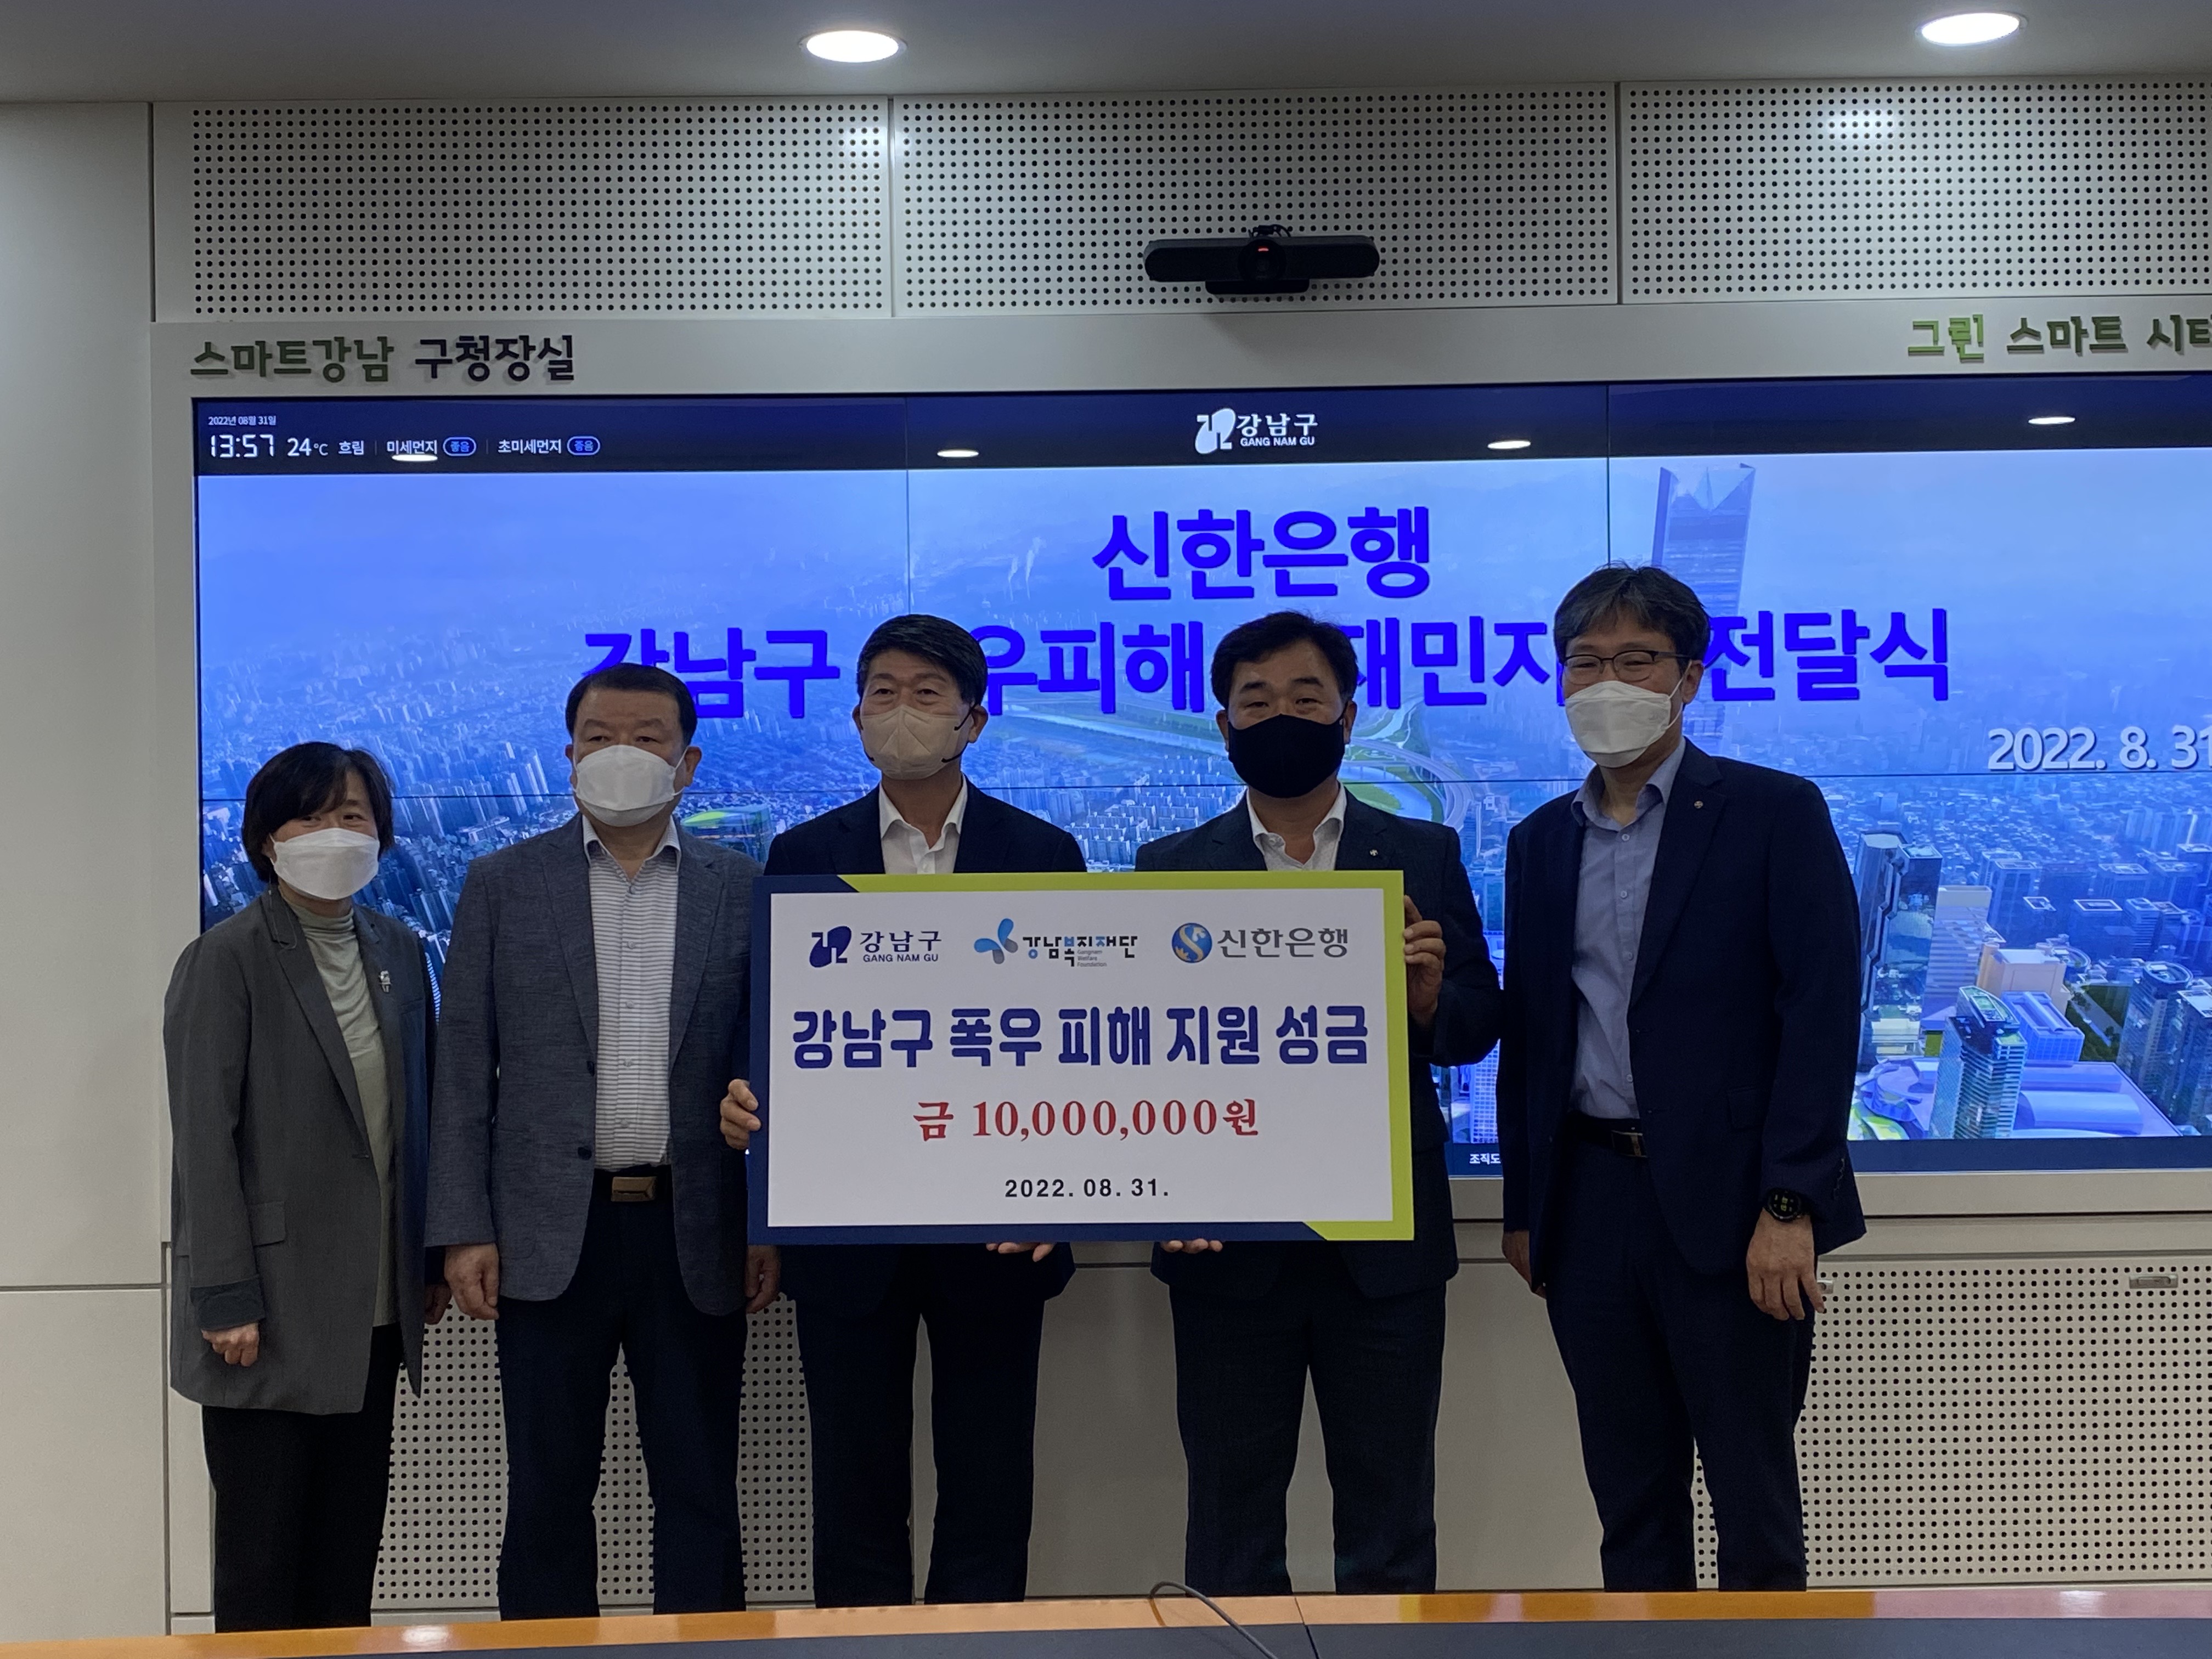 신한은행 강남구 폭우피해 지원 성금 전달식